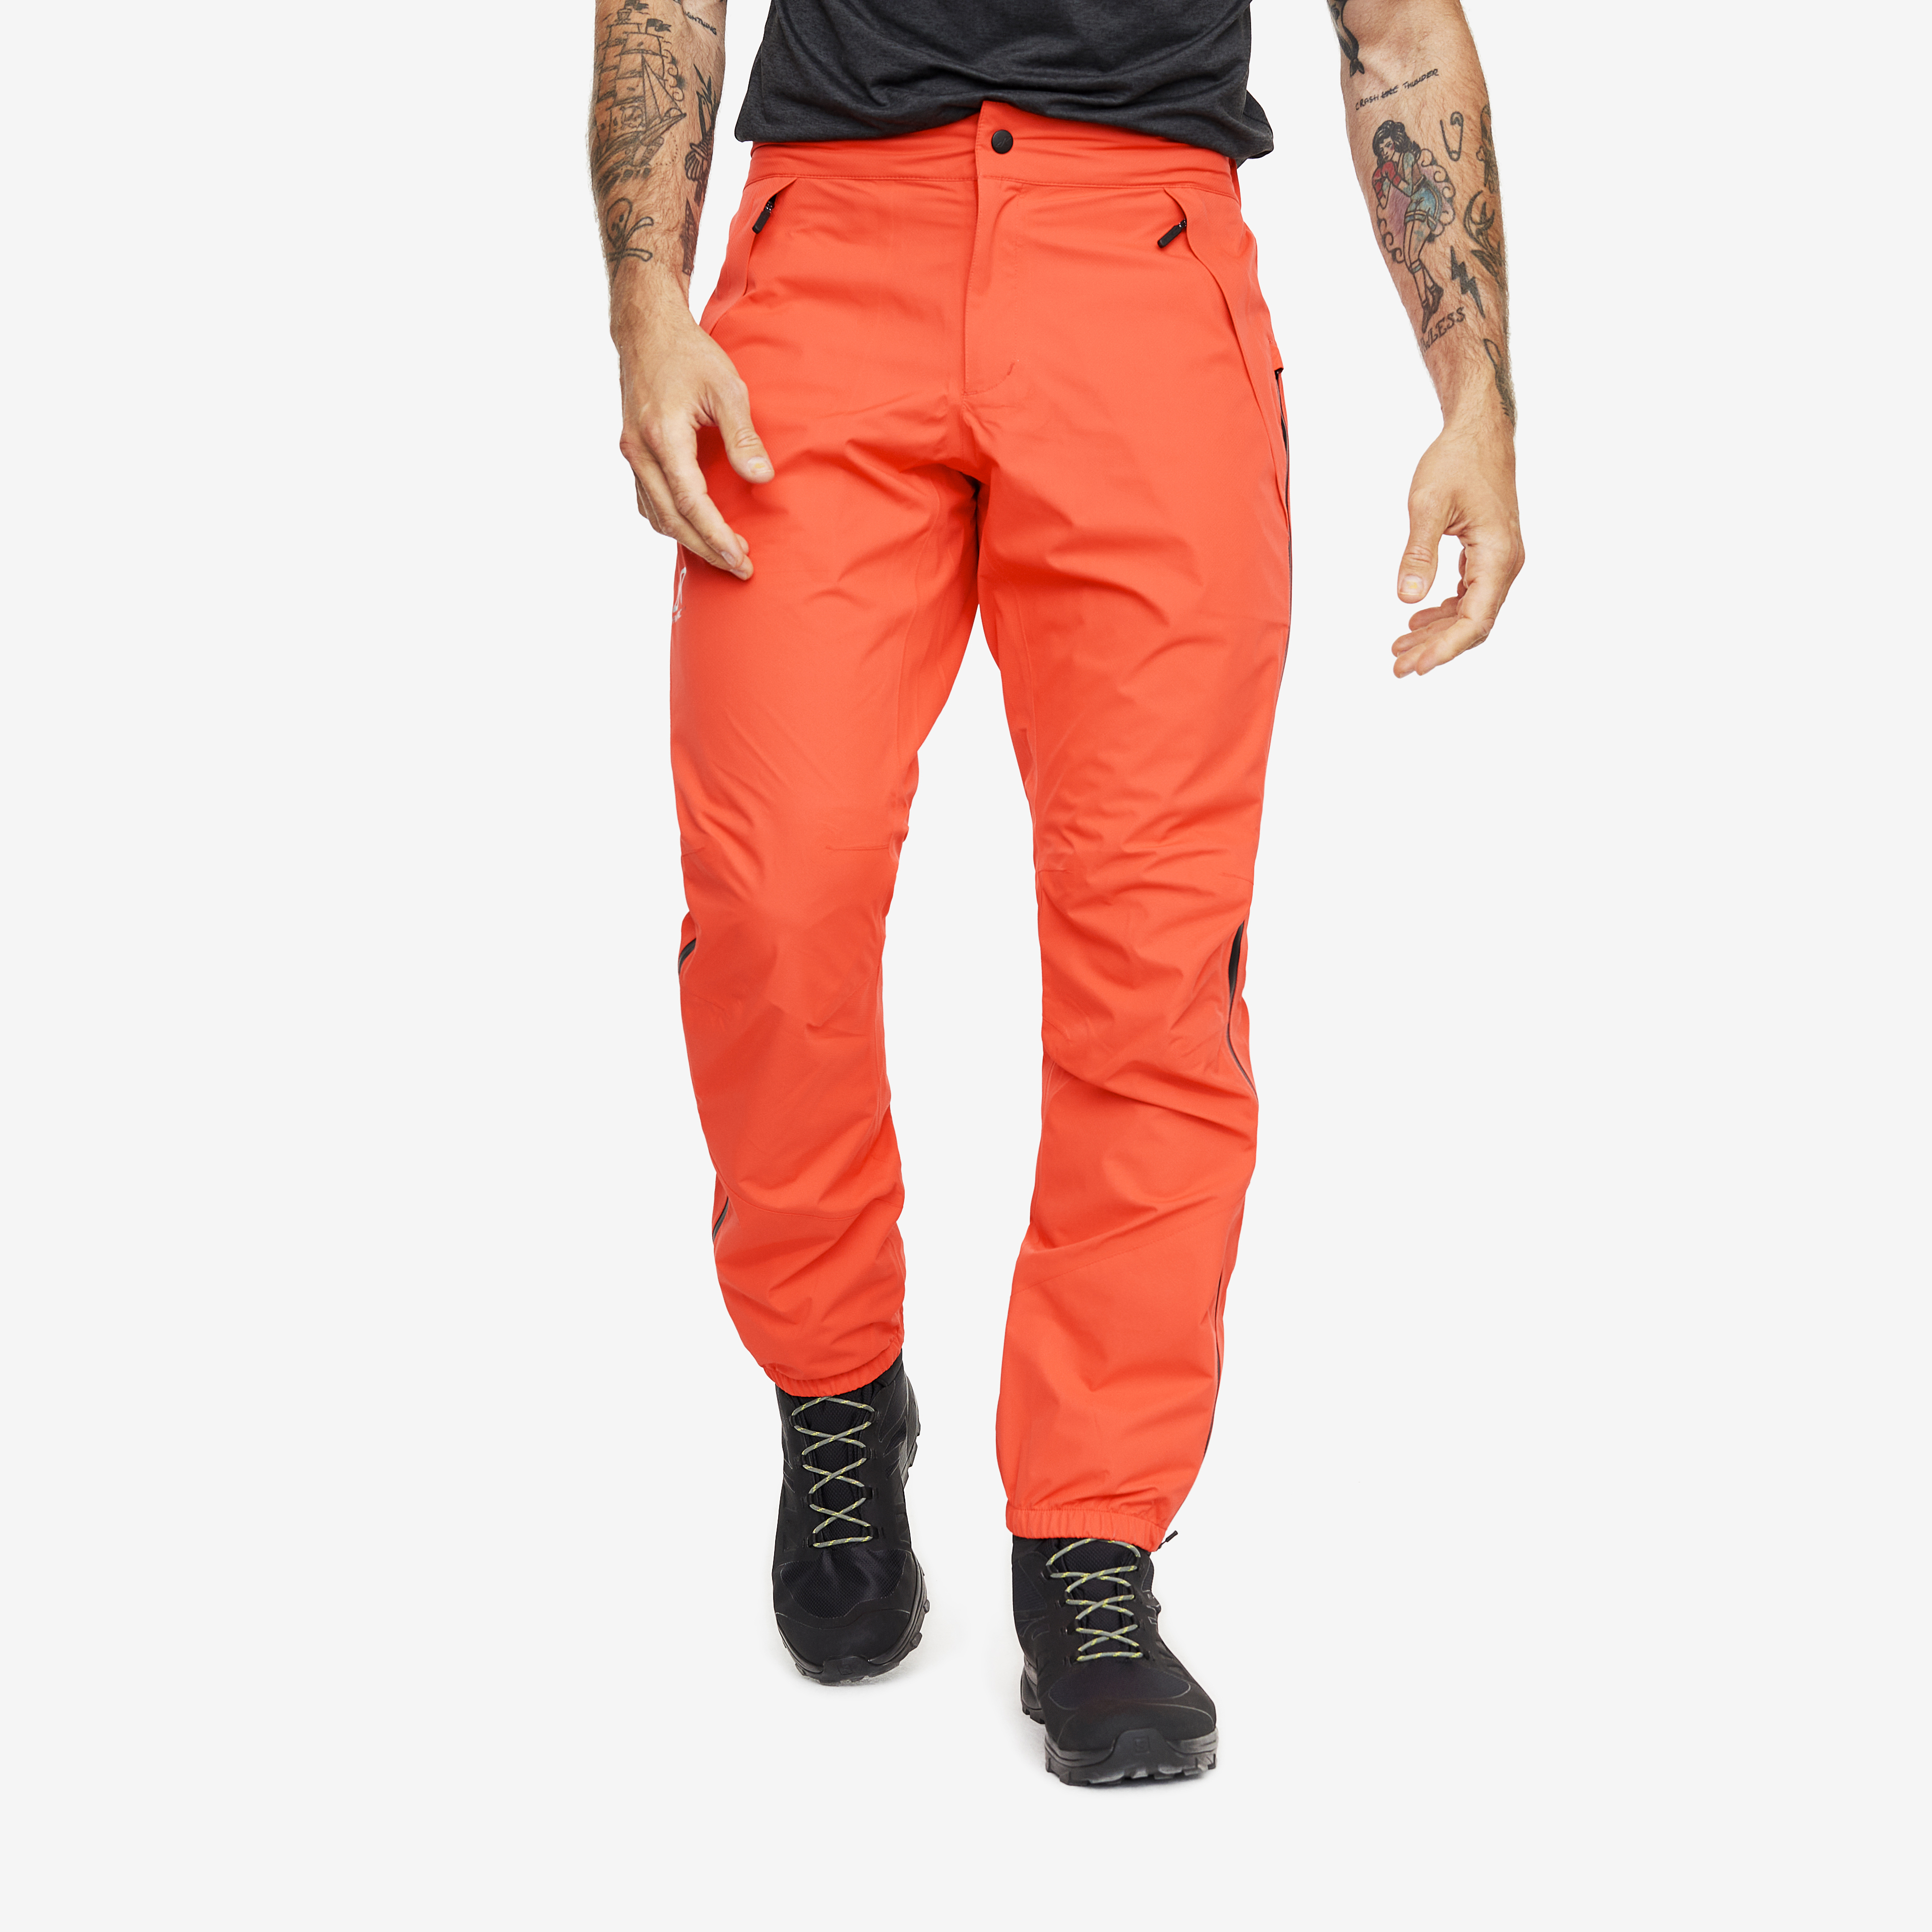 Typhoon waterproof trousers for men in orange